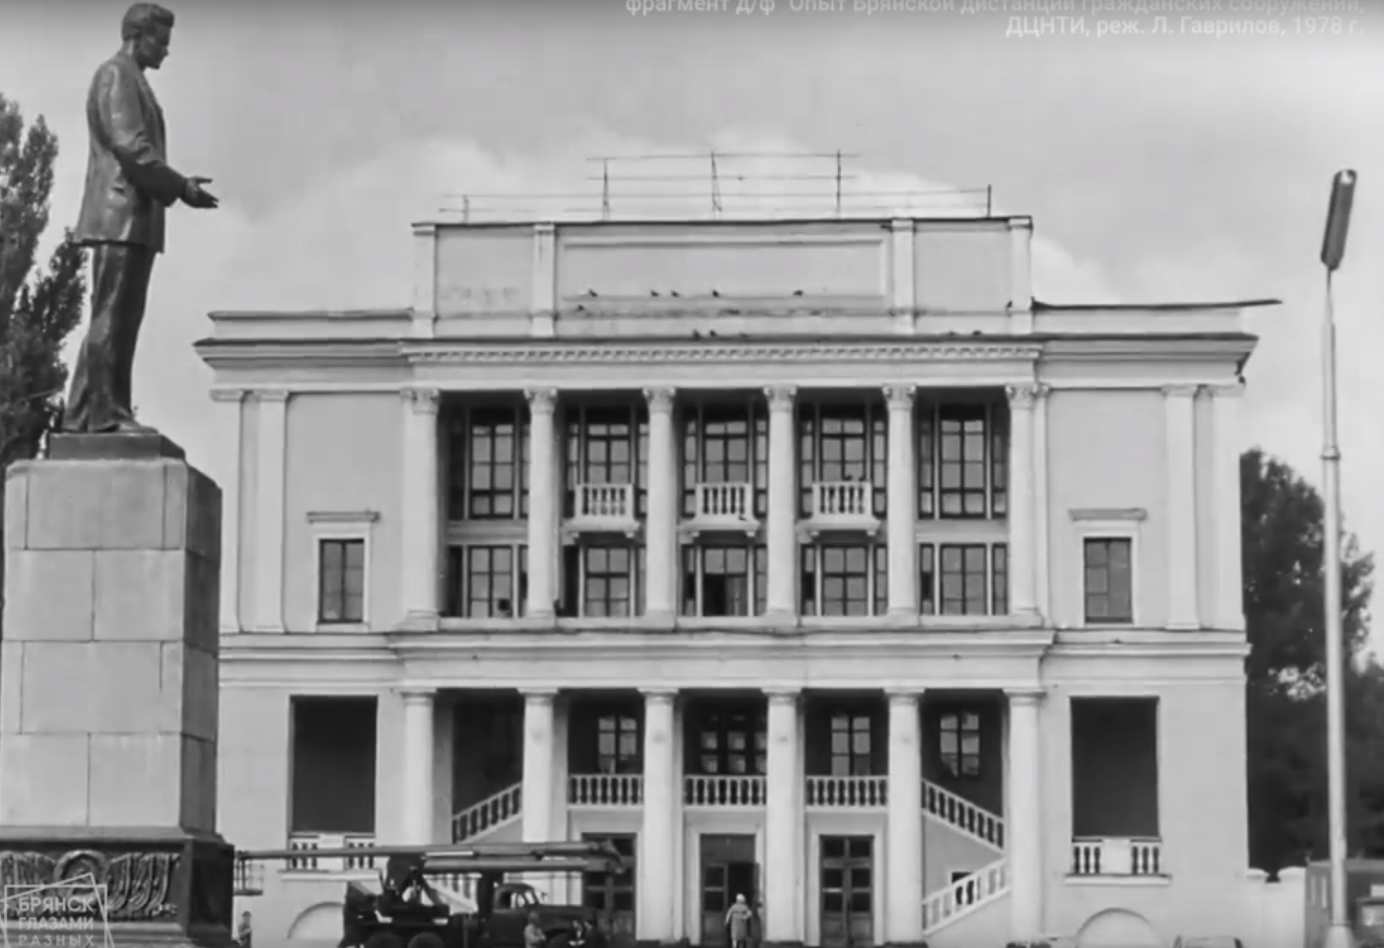 Жителям Брянска показали кадры Фокинского района из снятого в 1978 году фрагмента кинохроники